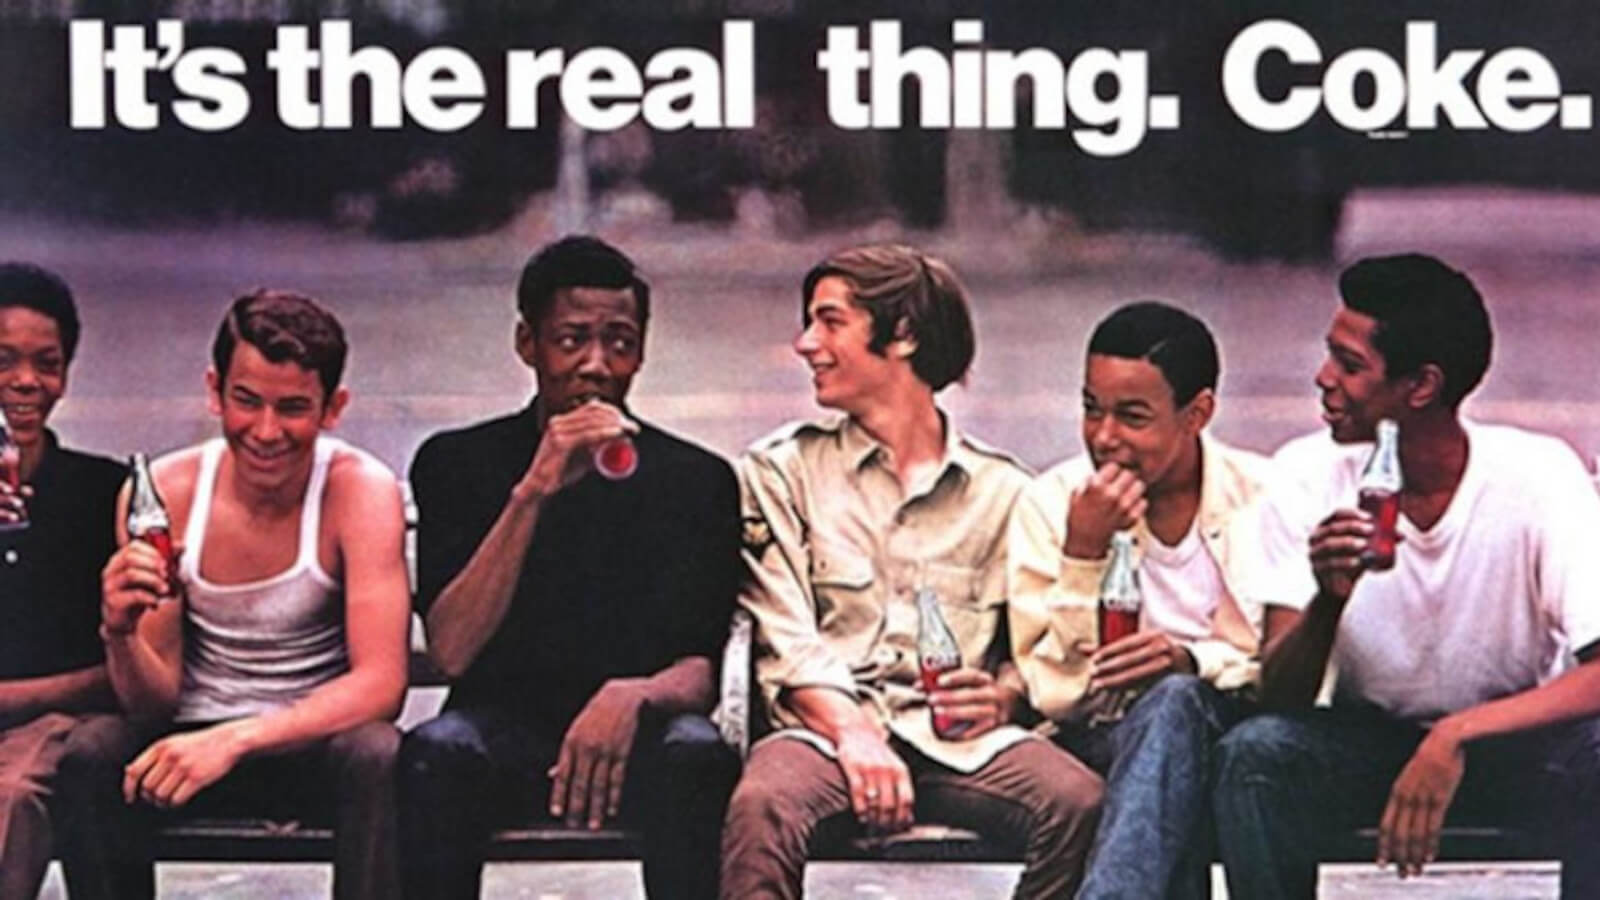 Anzeige aus den 60ern: Weisse und afroamerikanische Jugendliche auf einer Bank sitzend